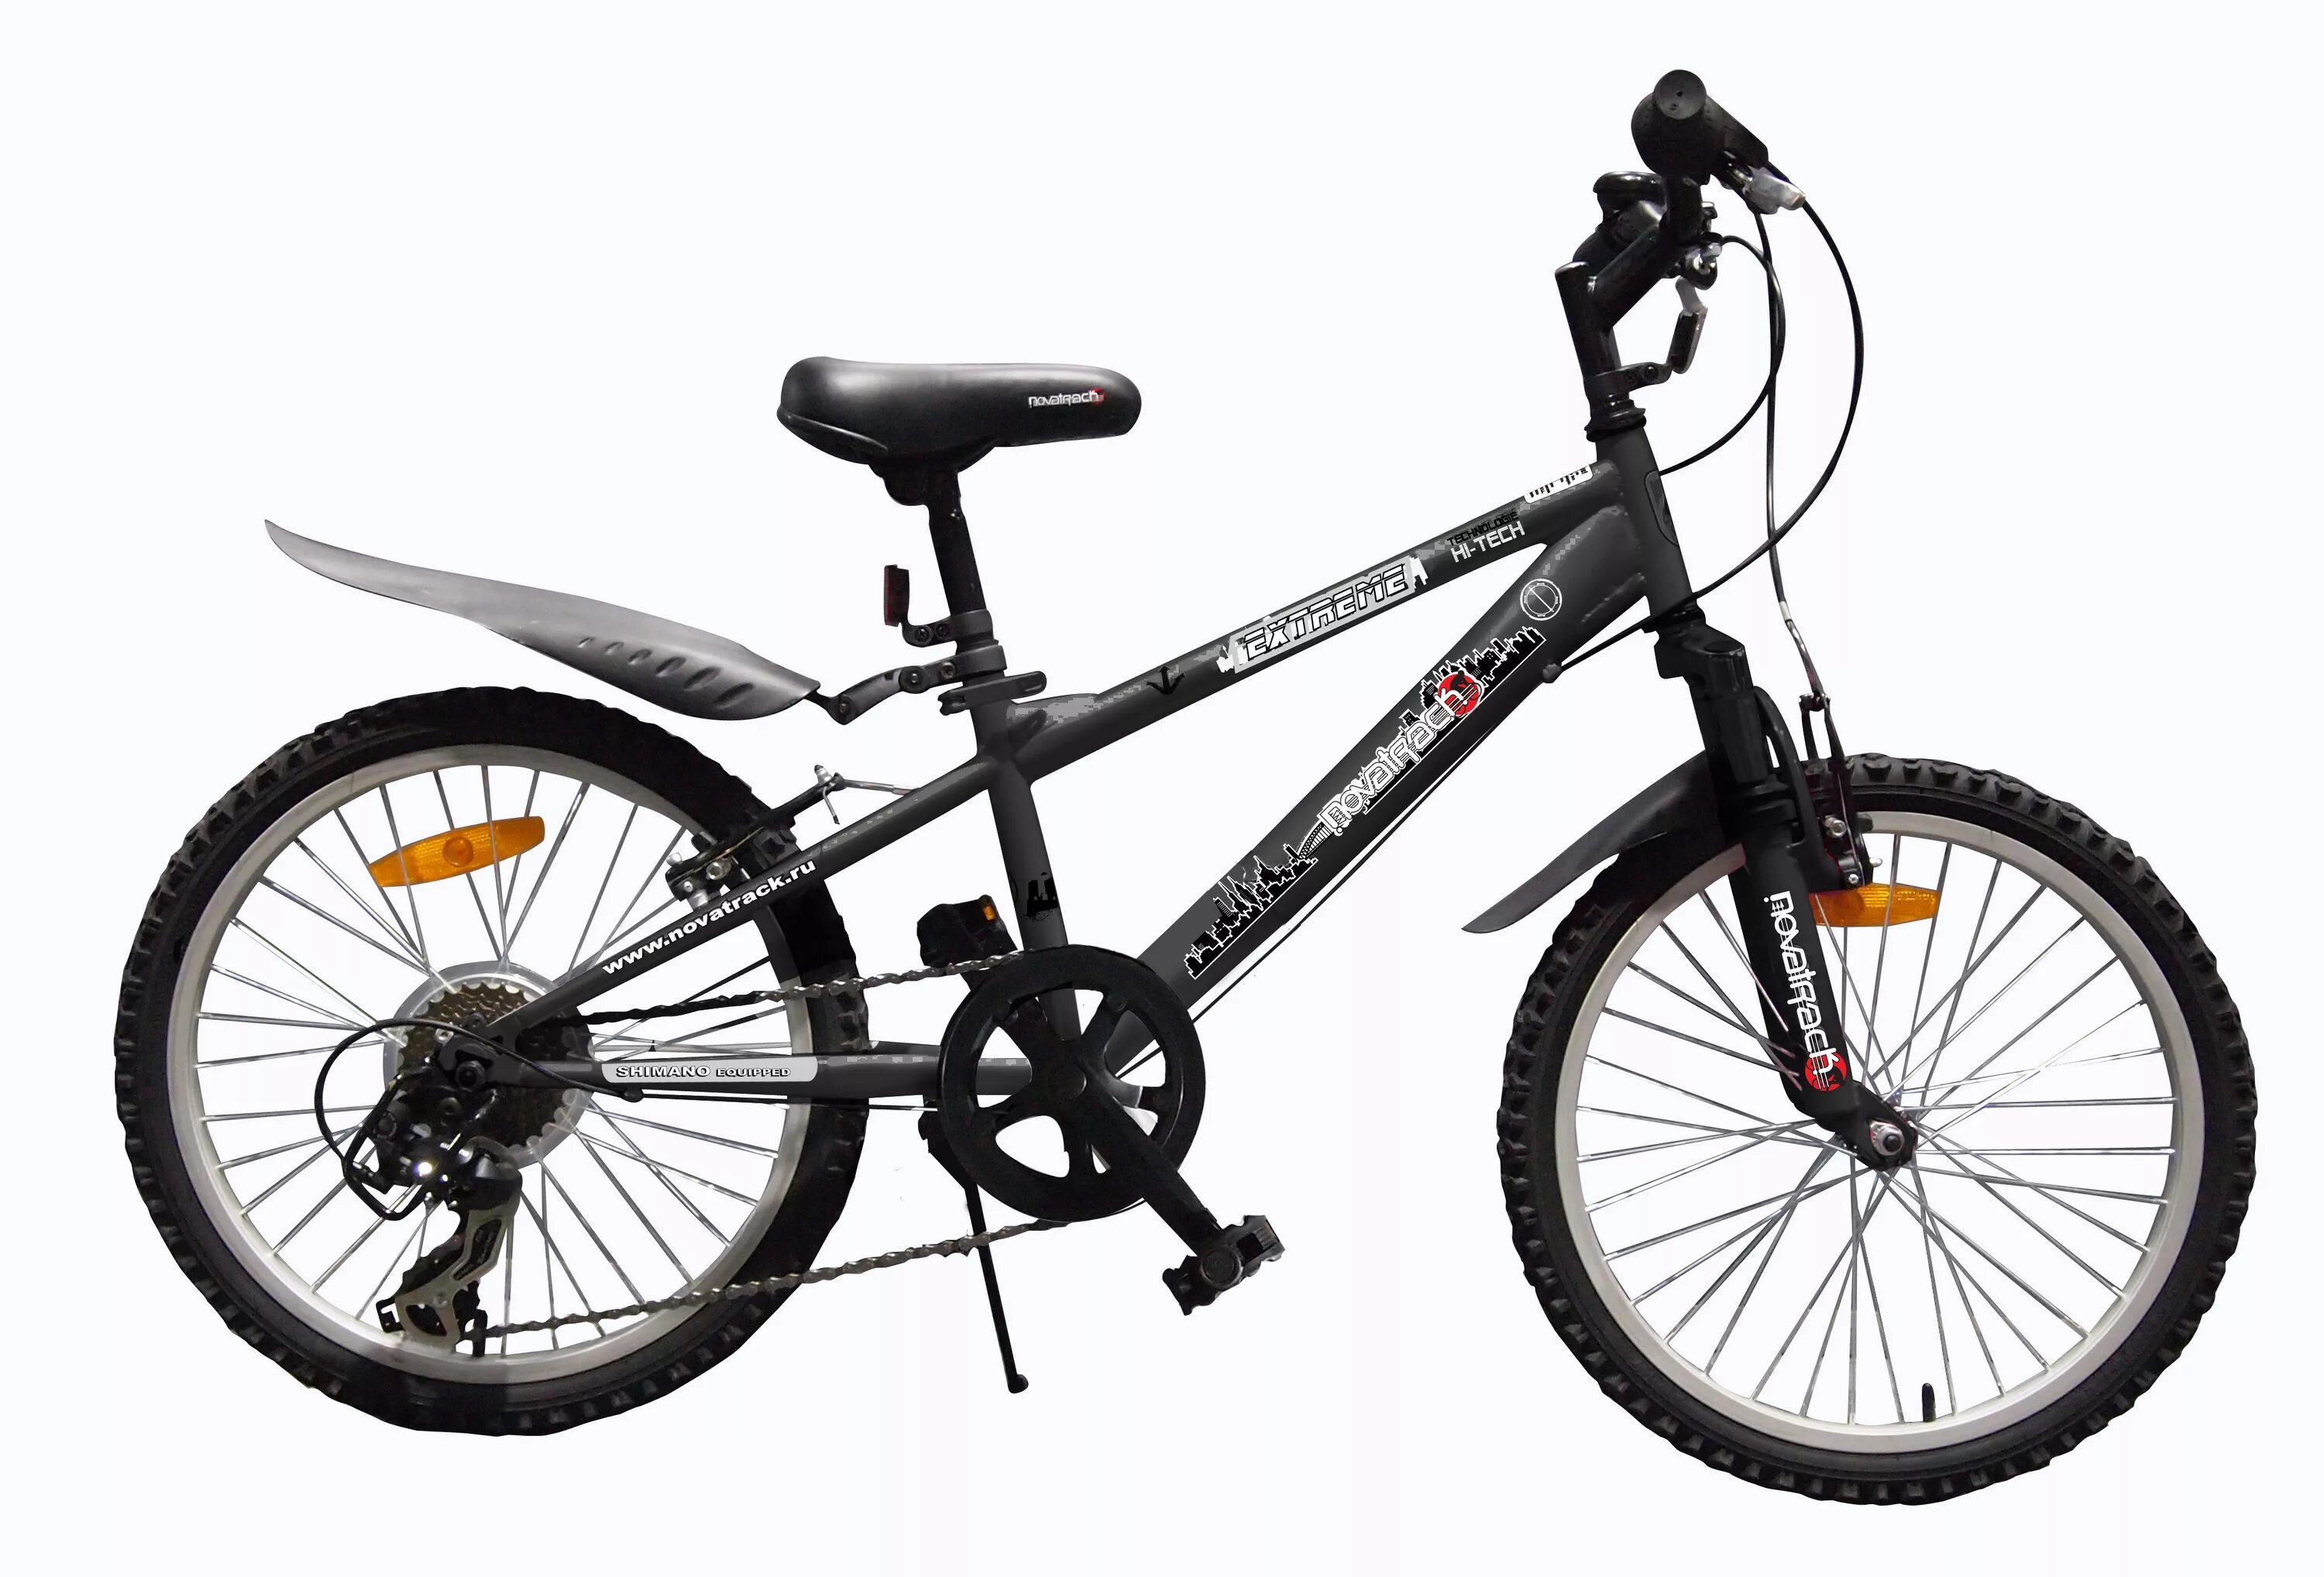 Купить велосипед со склада недорого. 24ahd.Lumen.11bl20. Stels 130 велосипед. Скоростной велосипед gw297543. Маленький скоростной велосипед.